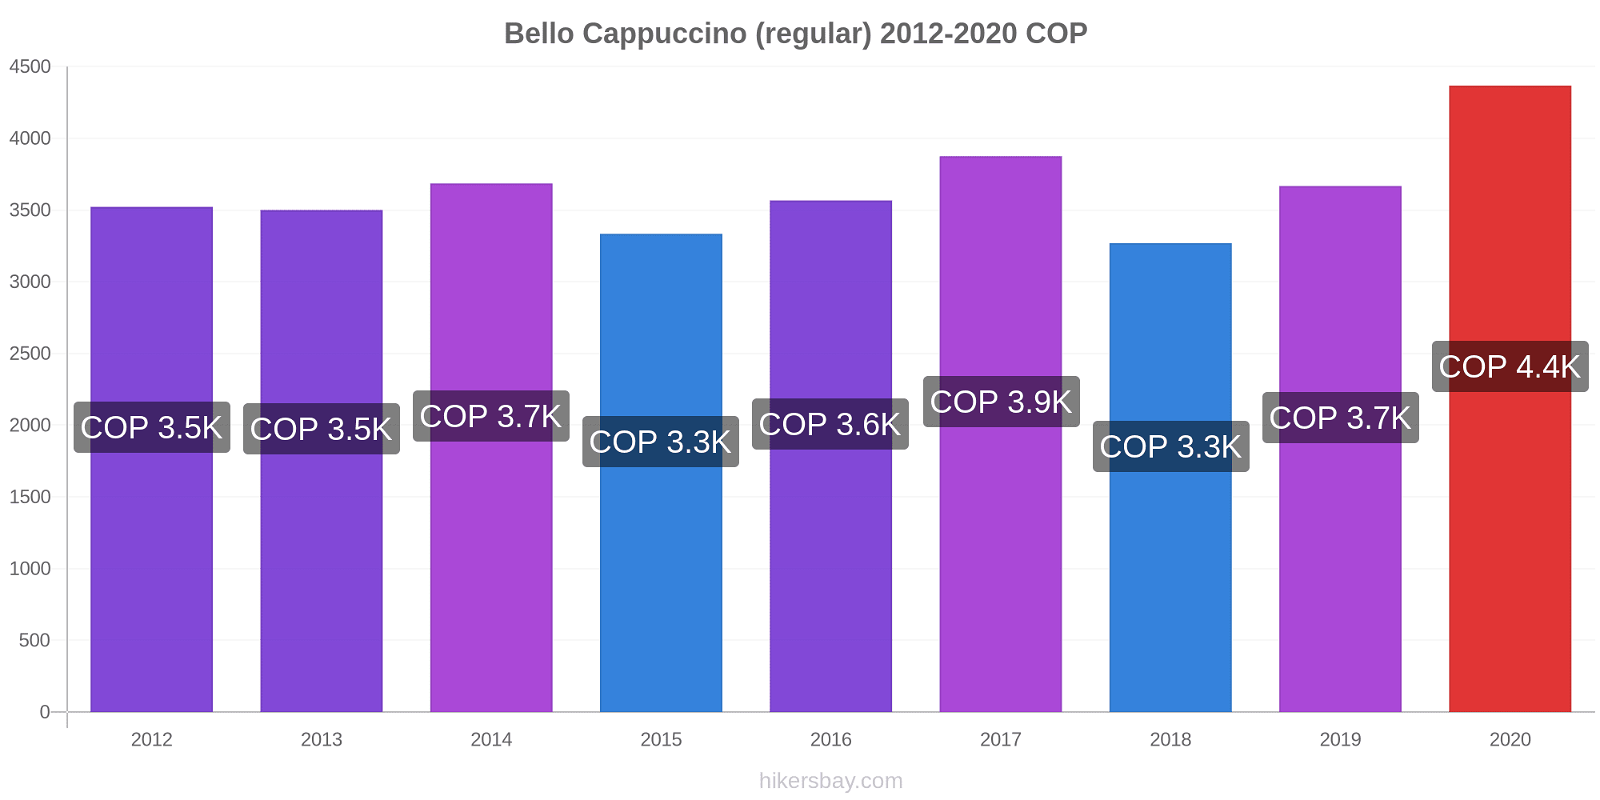 Bello price changes Cappuccino (regular) hikersbay.com